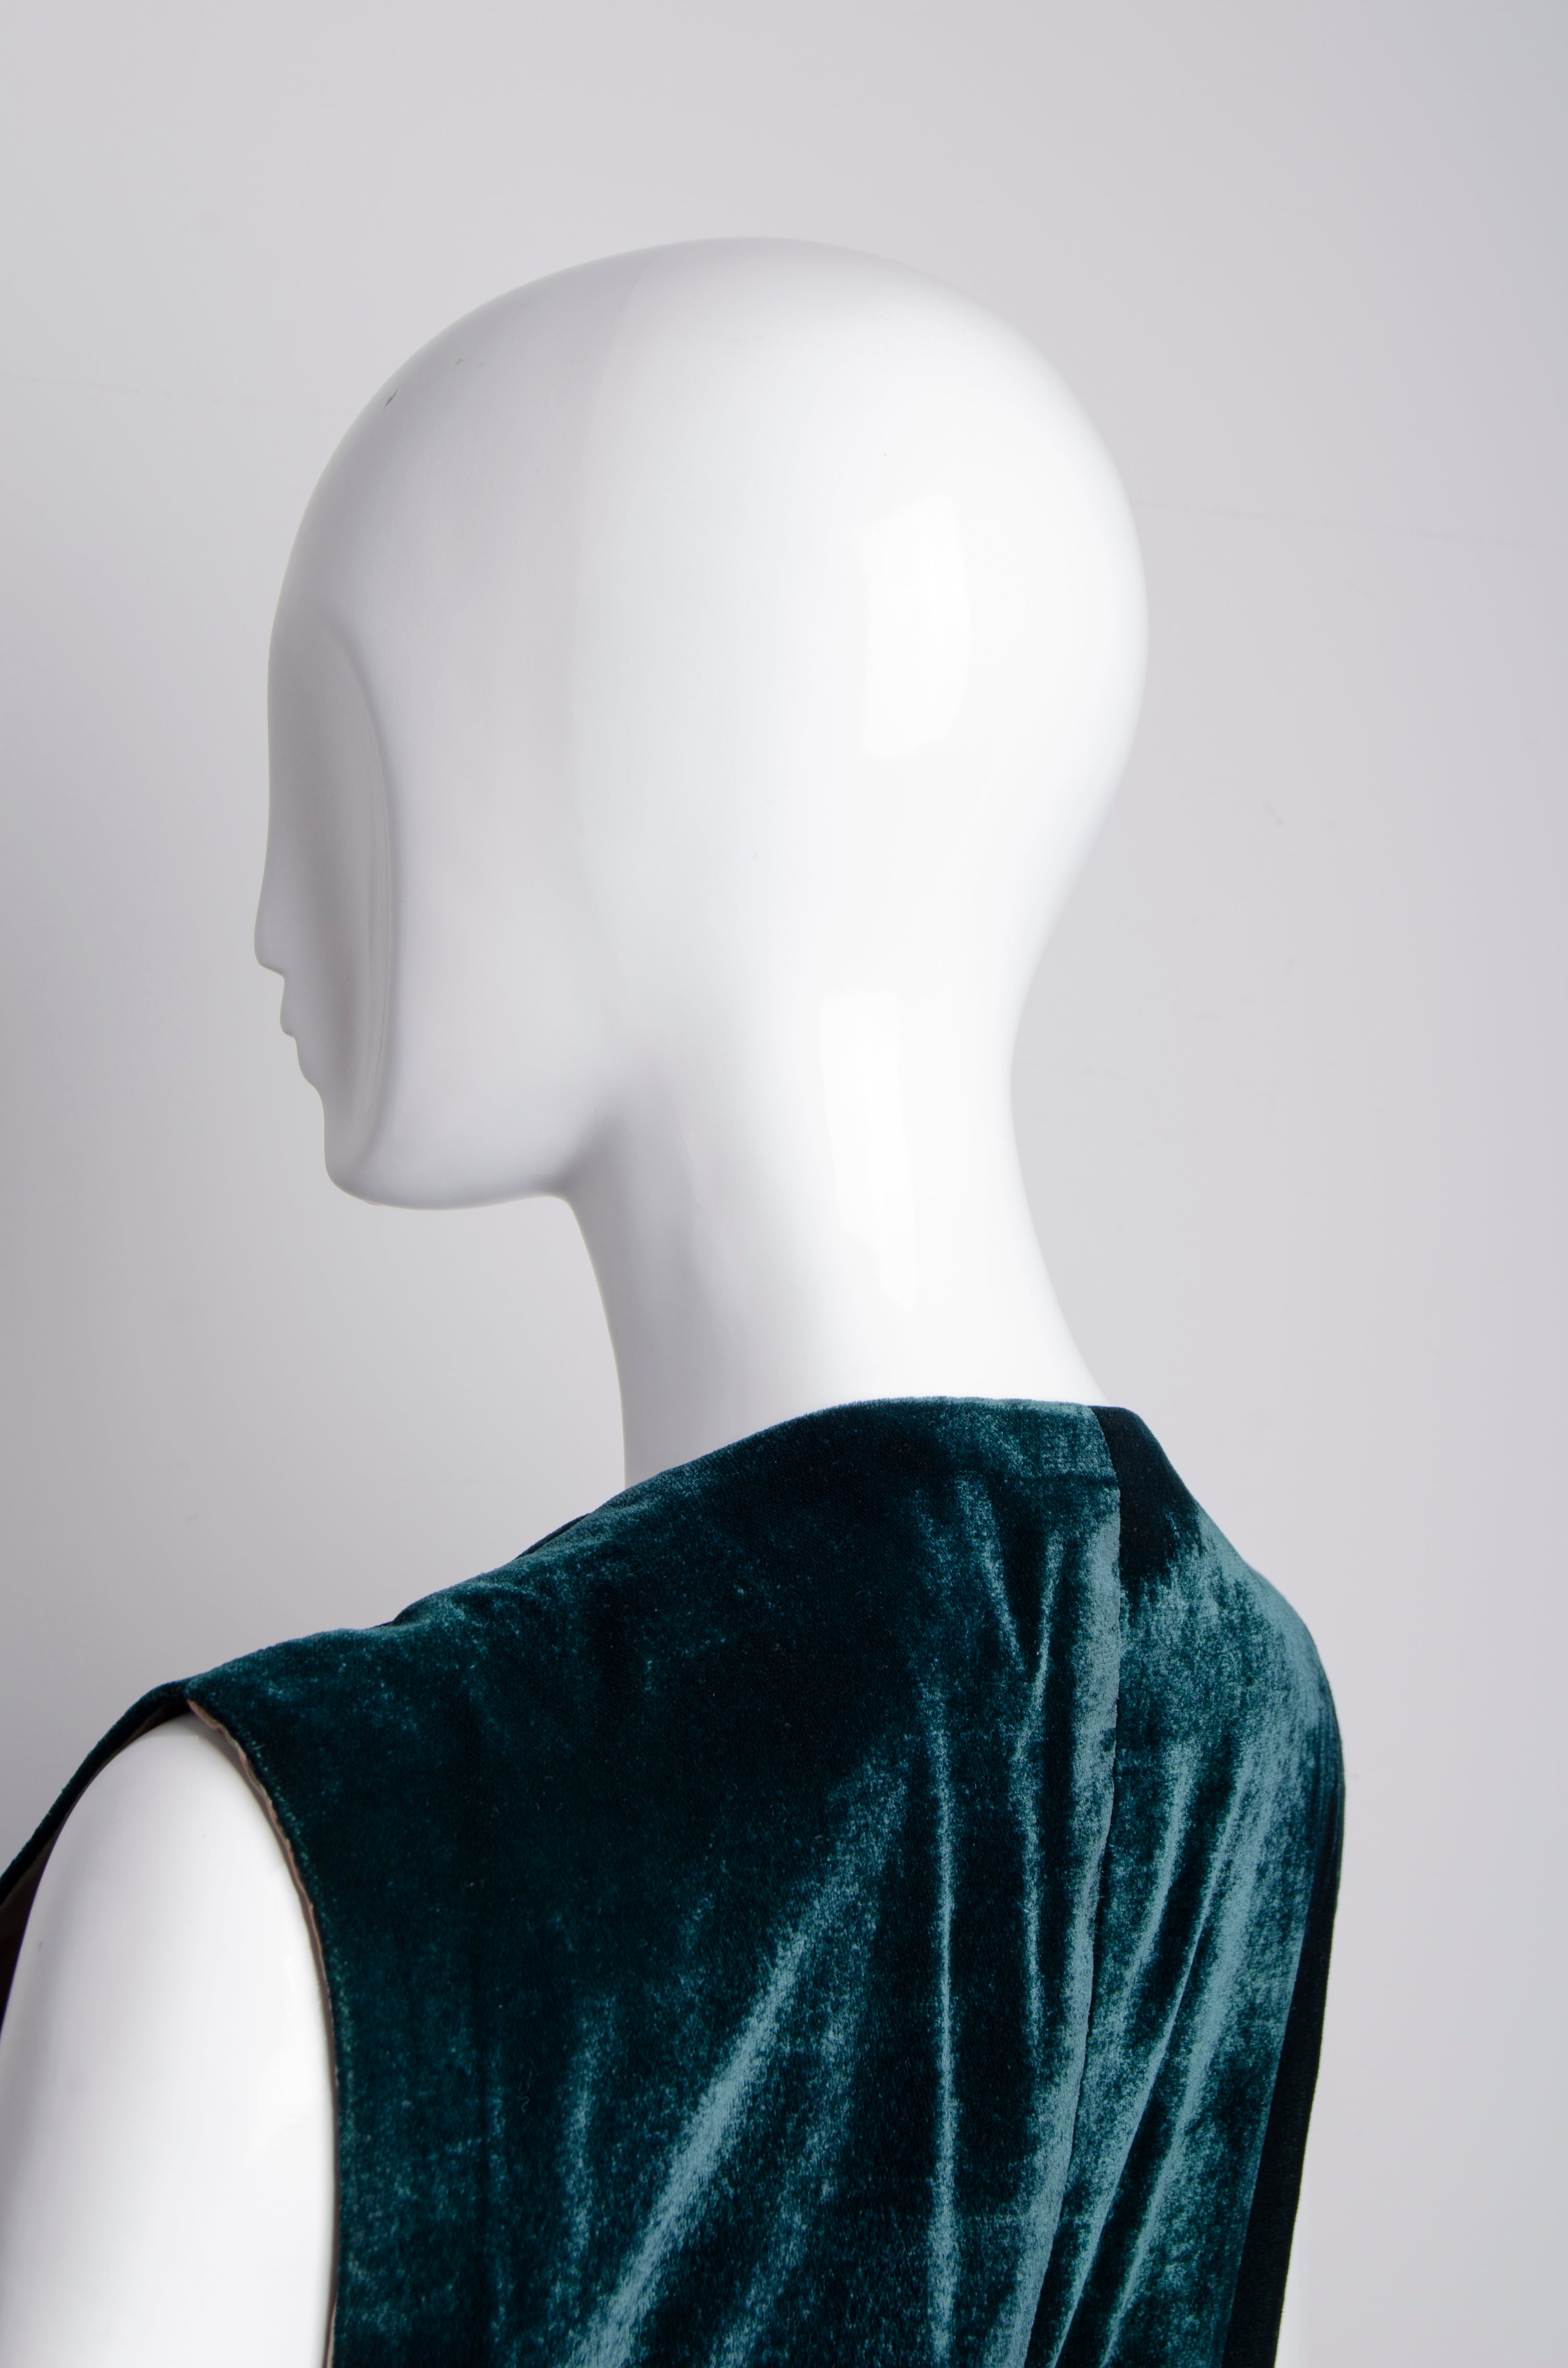 Emerald Waistcoat